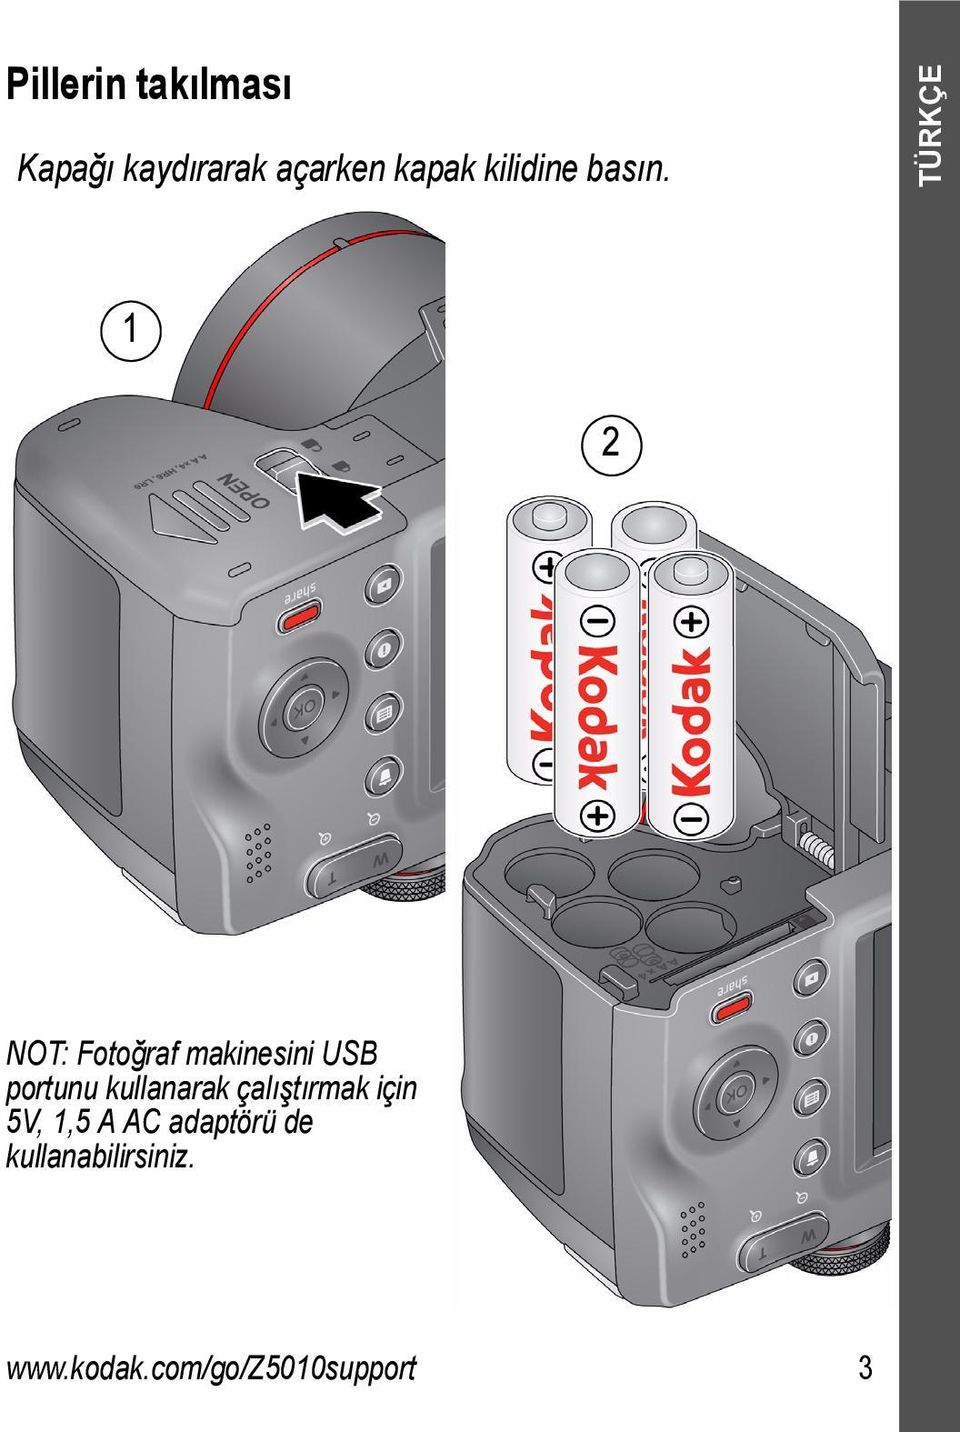 TÜRKÇE 1 2 NOT: Fotoğraf makinesini USB portunu